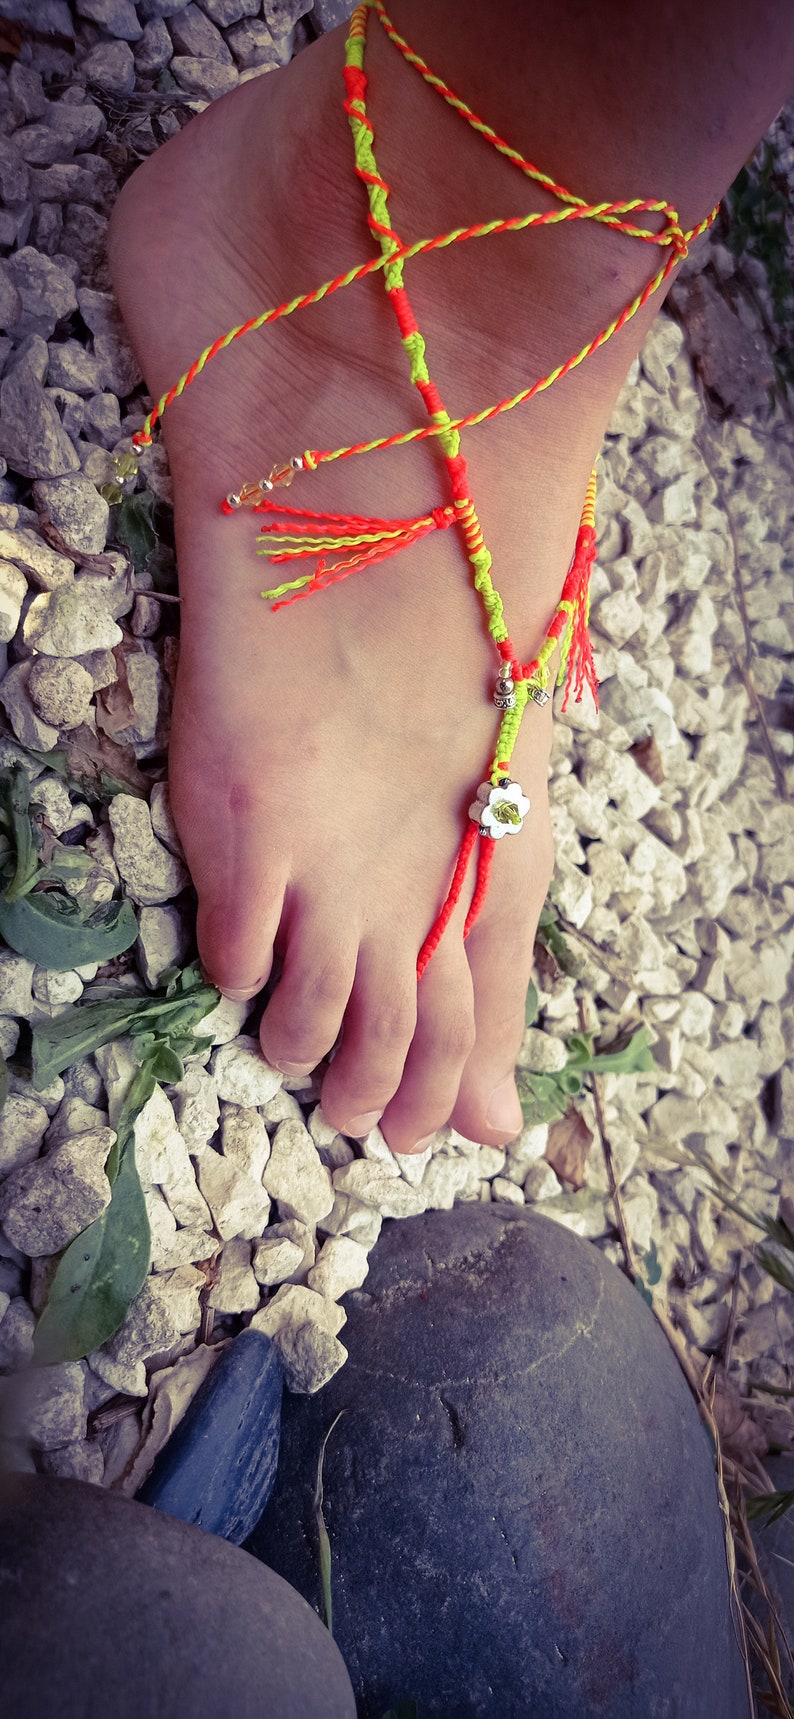 MANONChevillère doigt de pied fleur fluo, réglable, style Boho image 3